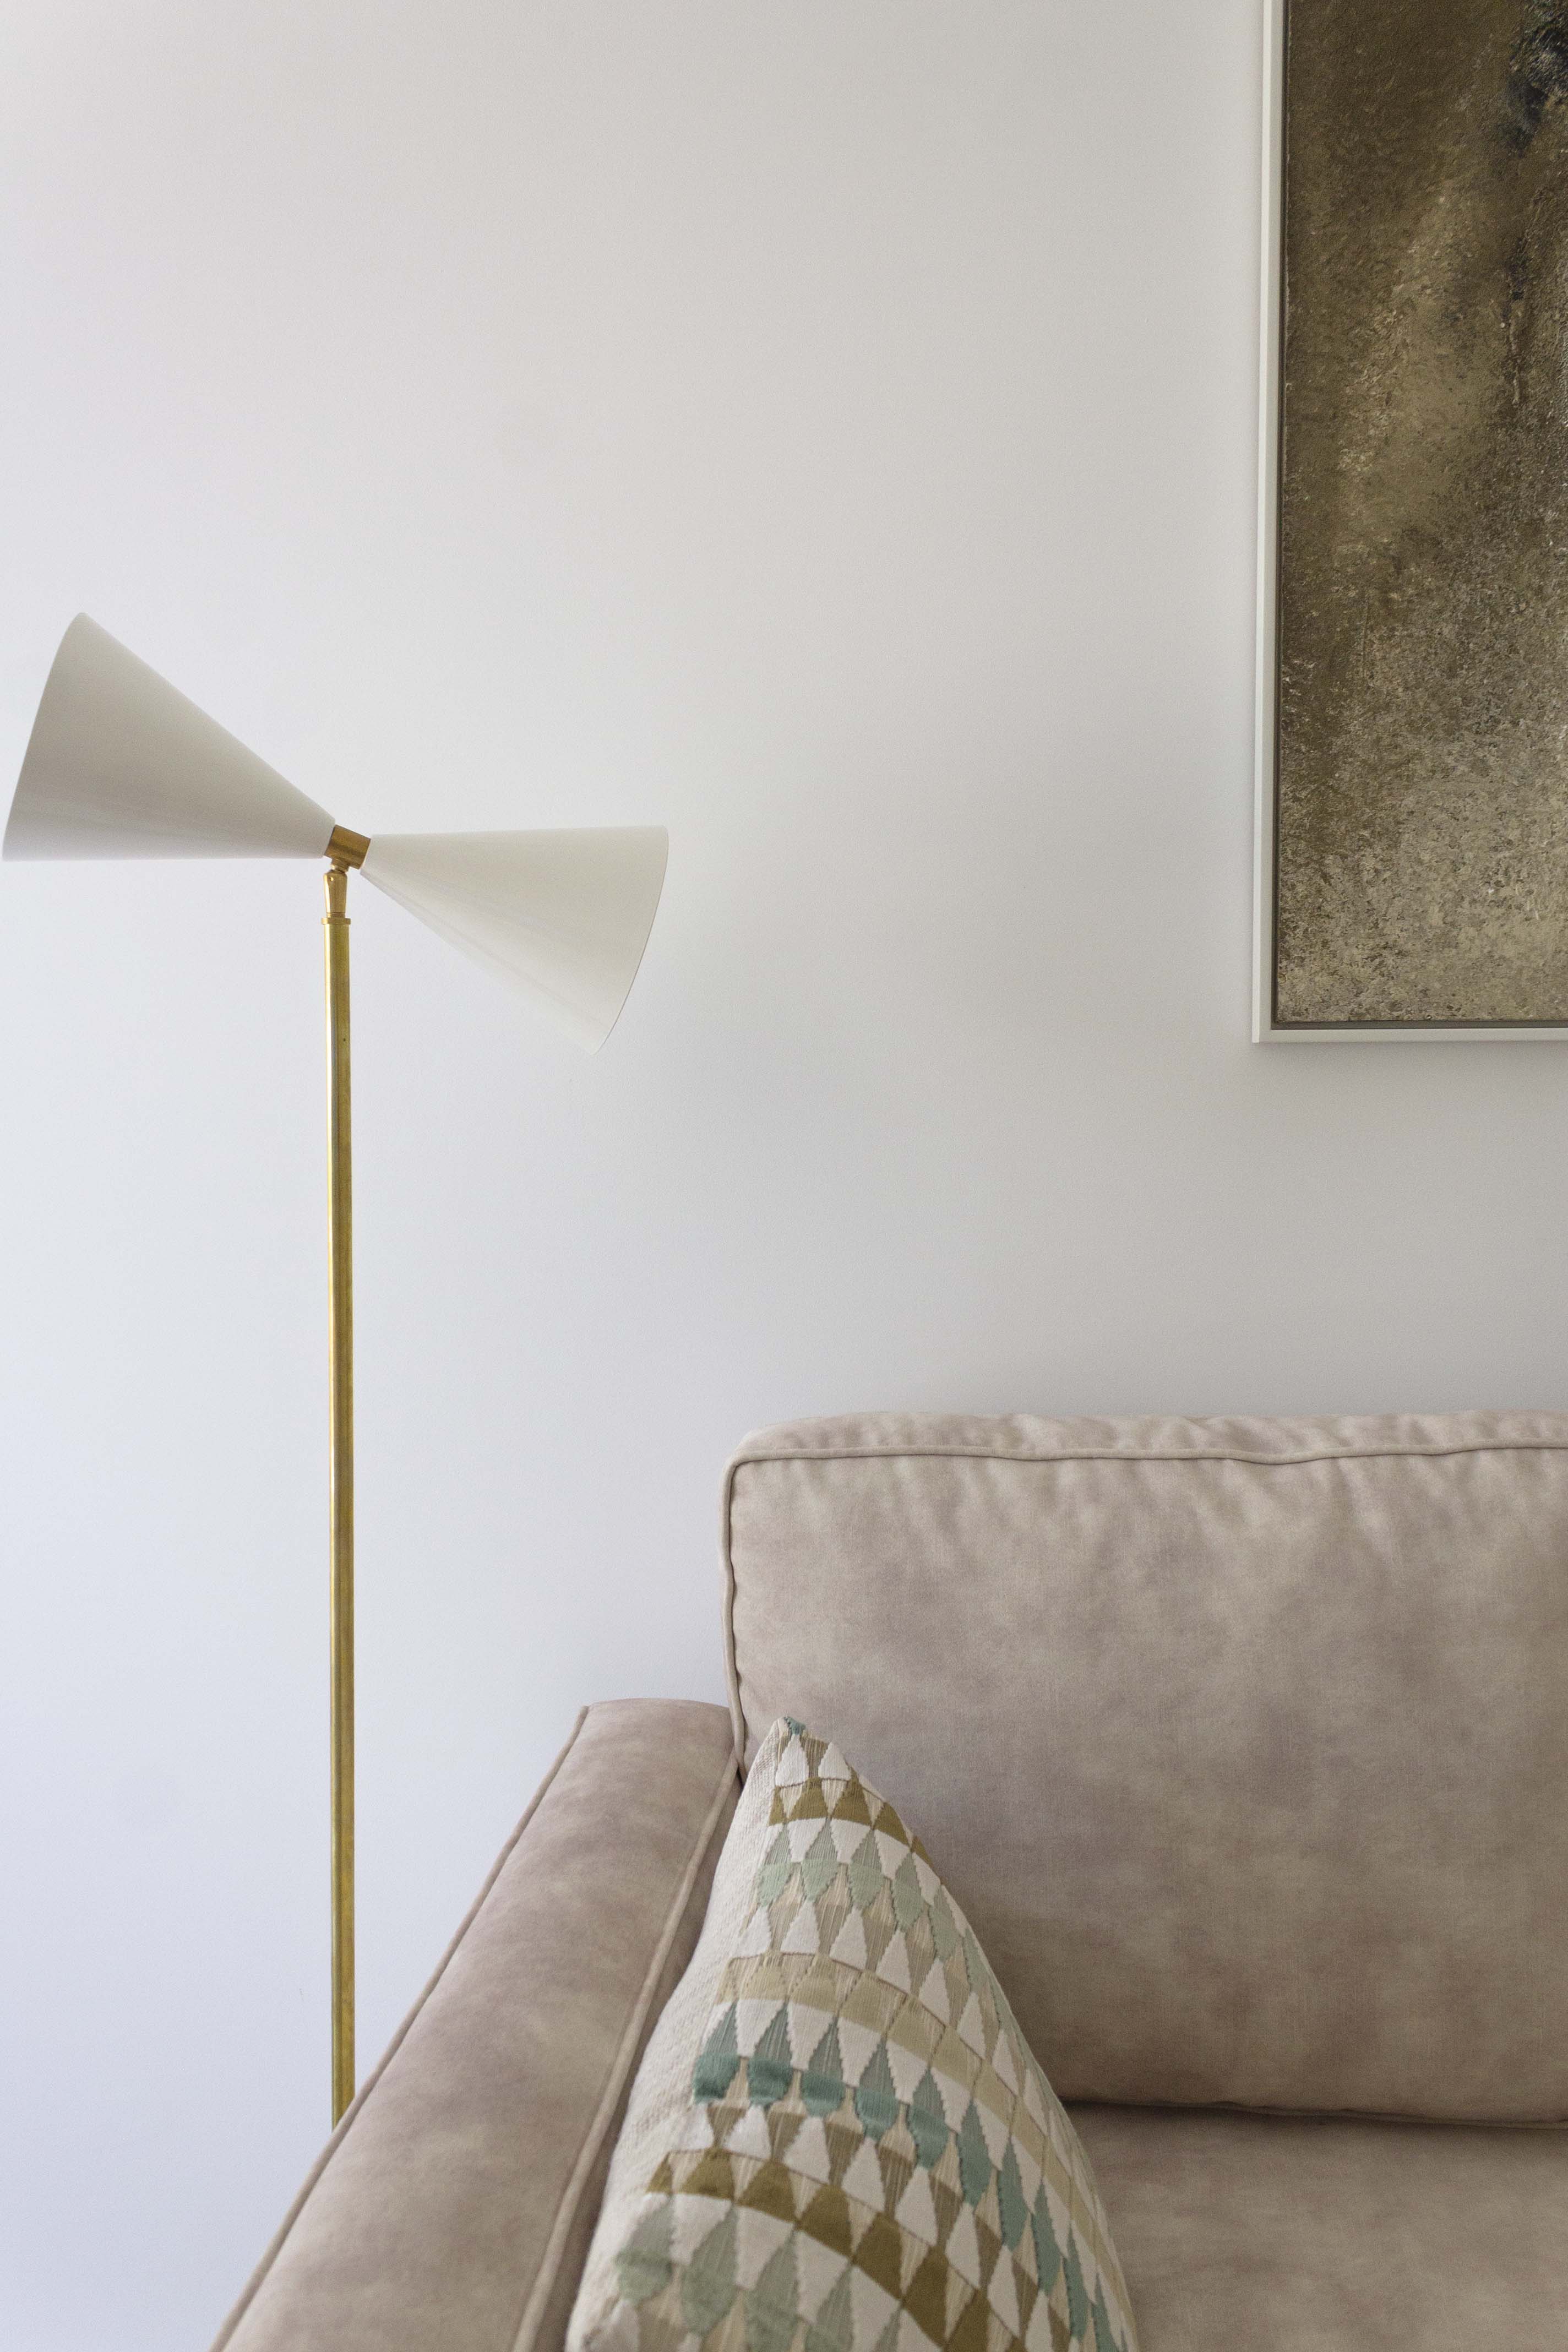 Foto de detalle de proyecto de interiorismo del despacho con sofá cama hecho a medida, lámpara dorada y blanca, cojines con tela con motivo geométrico y cuadro de arte